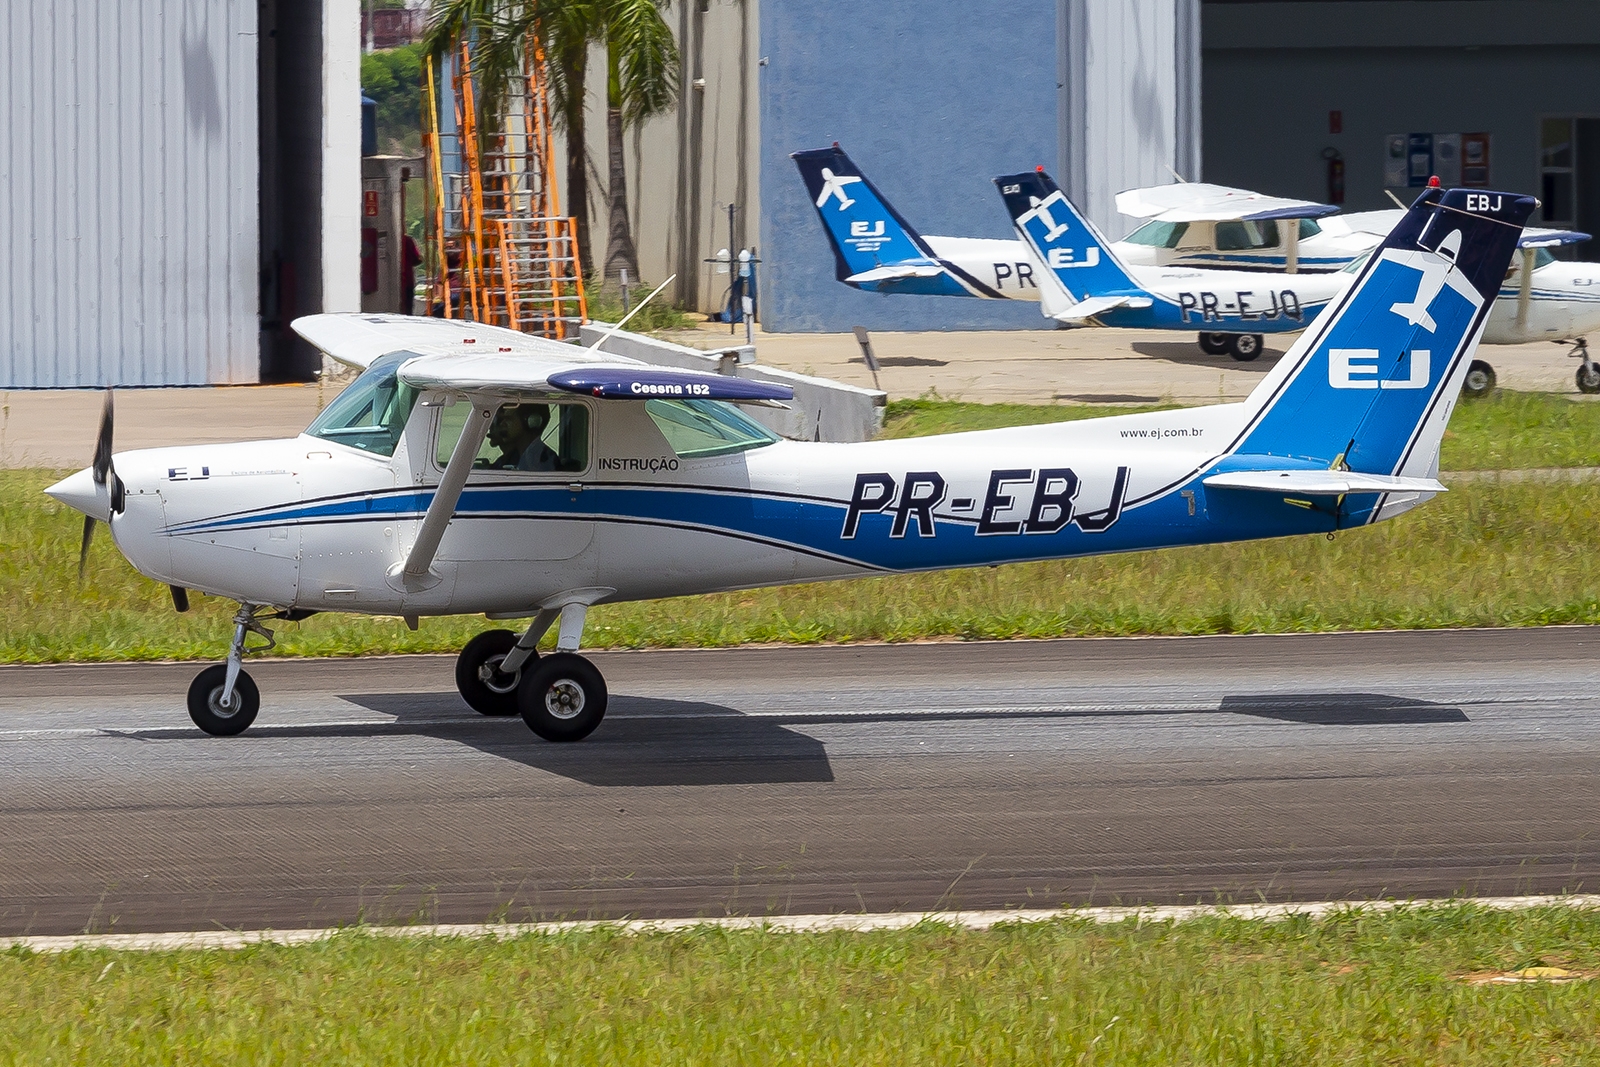 PR-EBJ - Cessna 152